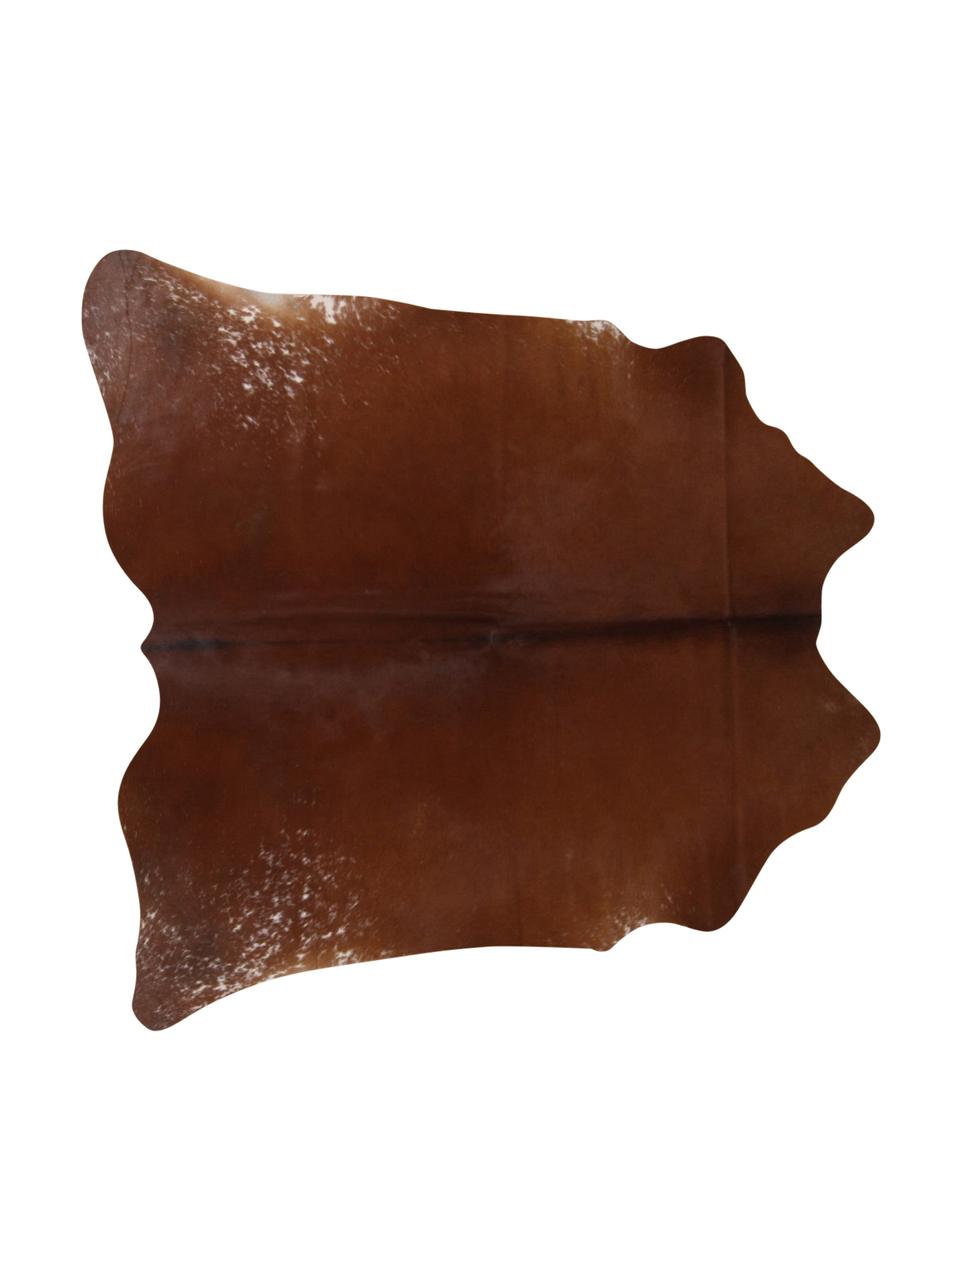 Dywan ze skóry bydlęcej Jura, Skóra bydlęca, Brązowy, beżowy, Unikatowa skóra bydlęca 983, 160 x 180 cm